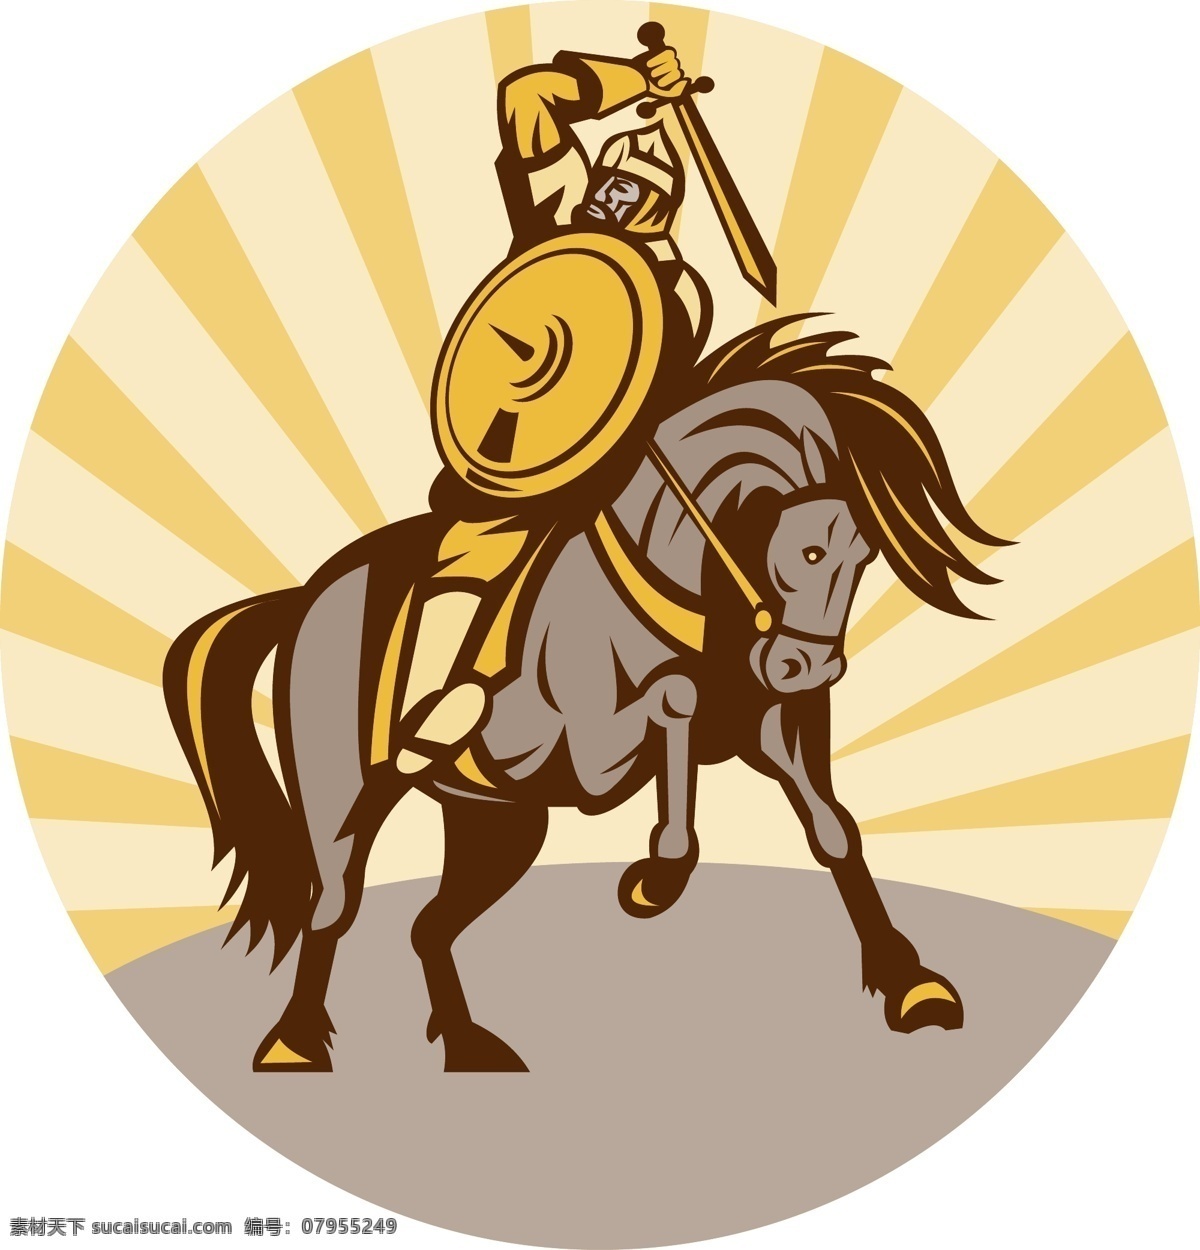 骑马将士 将士 将军 骑马 盾牌 马 卡通设计